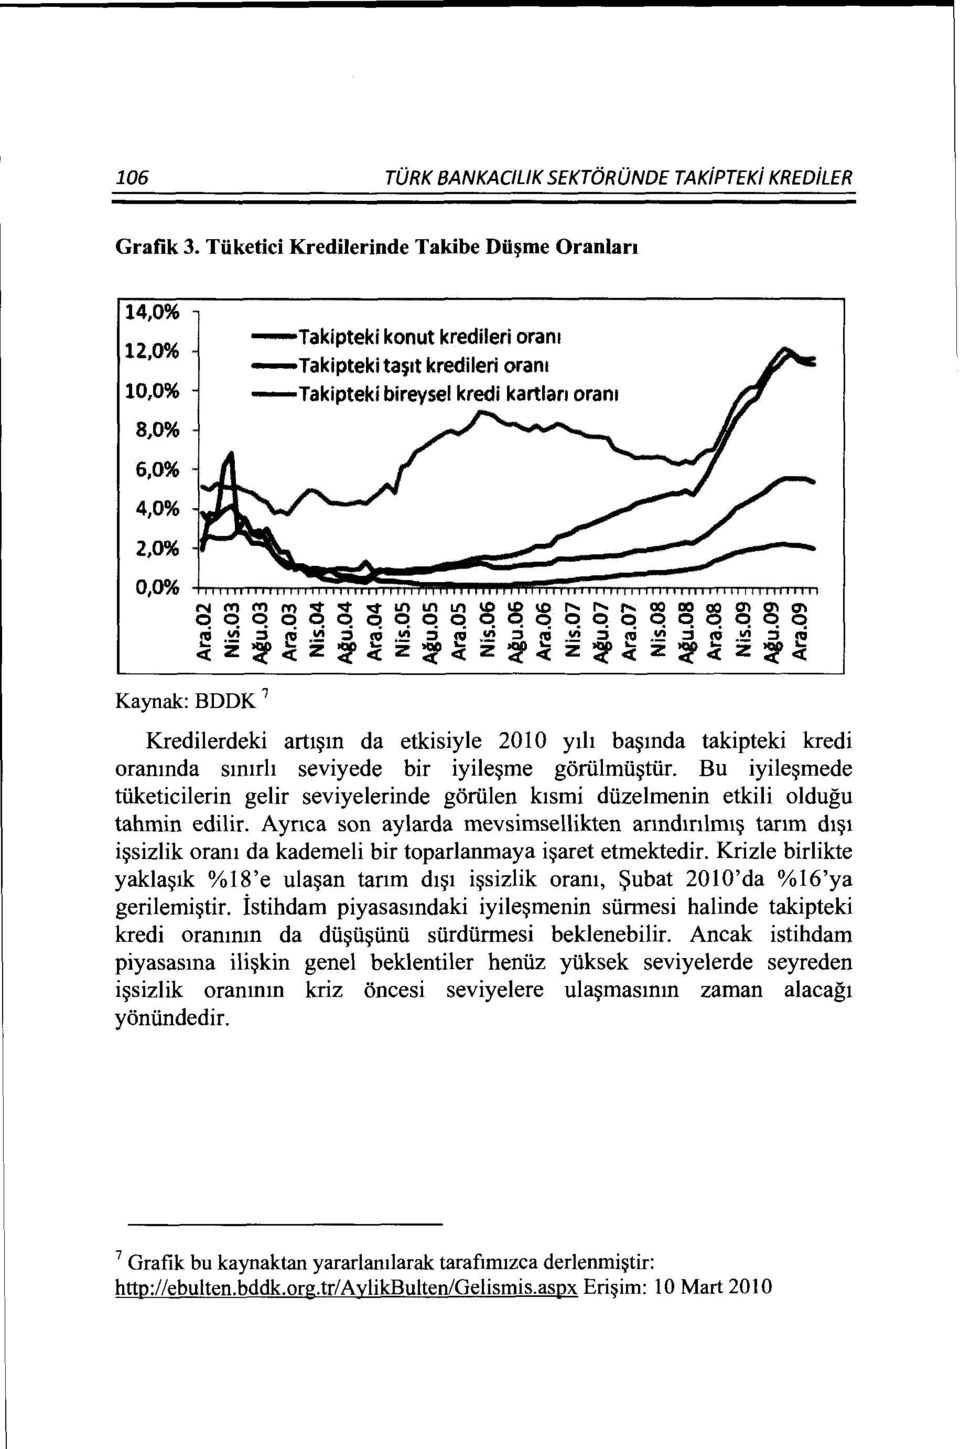 Kaynak: BDDK 7 Kredilerdeki artt~m da etkisiyle 2010 yth ba~mda takipteki kredi oranmda smtrh seviyede bir iyile~me gortilmii~tiir.